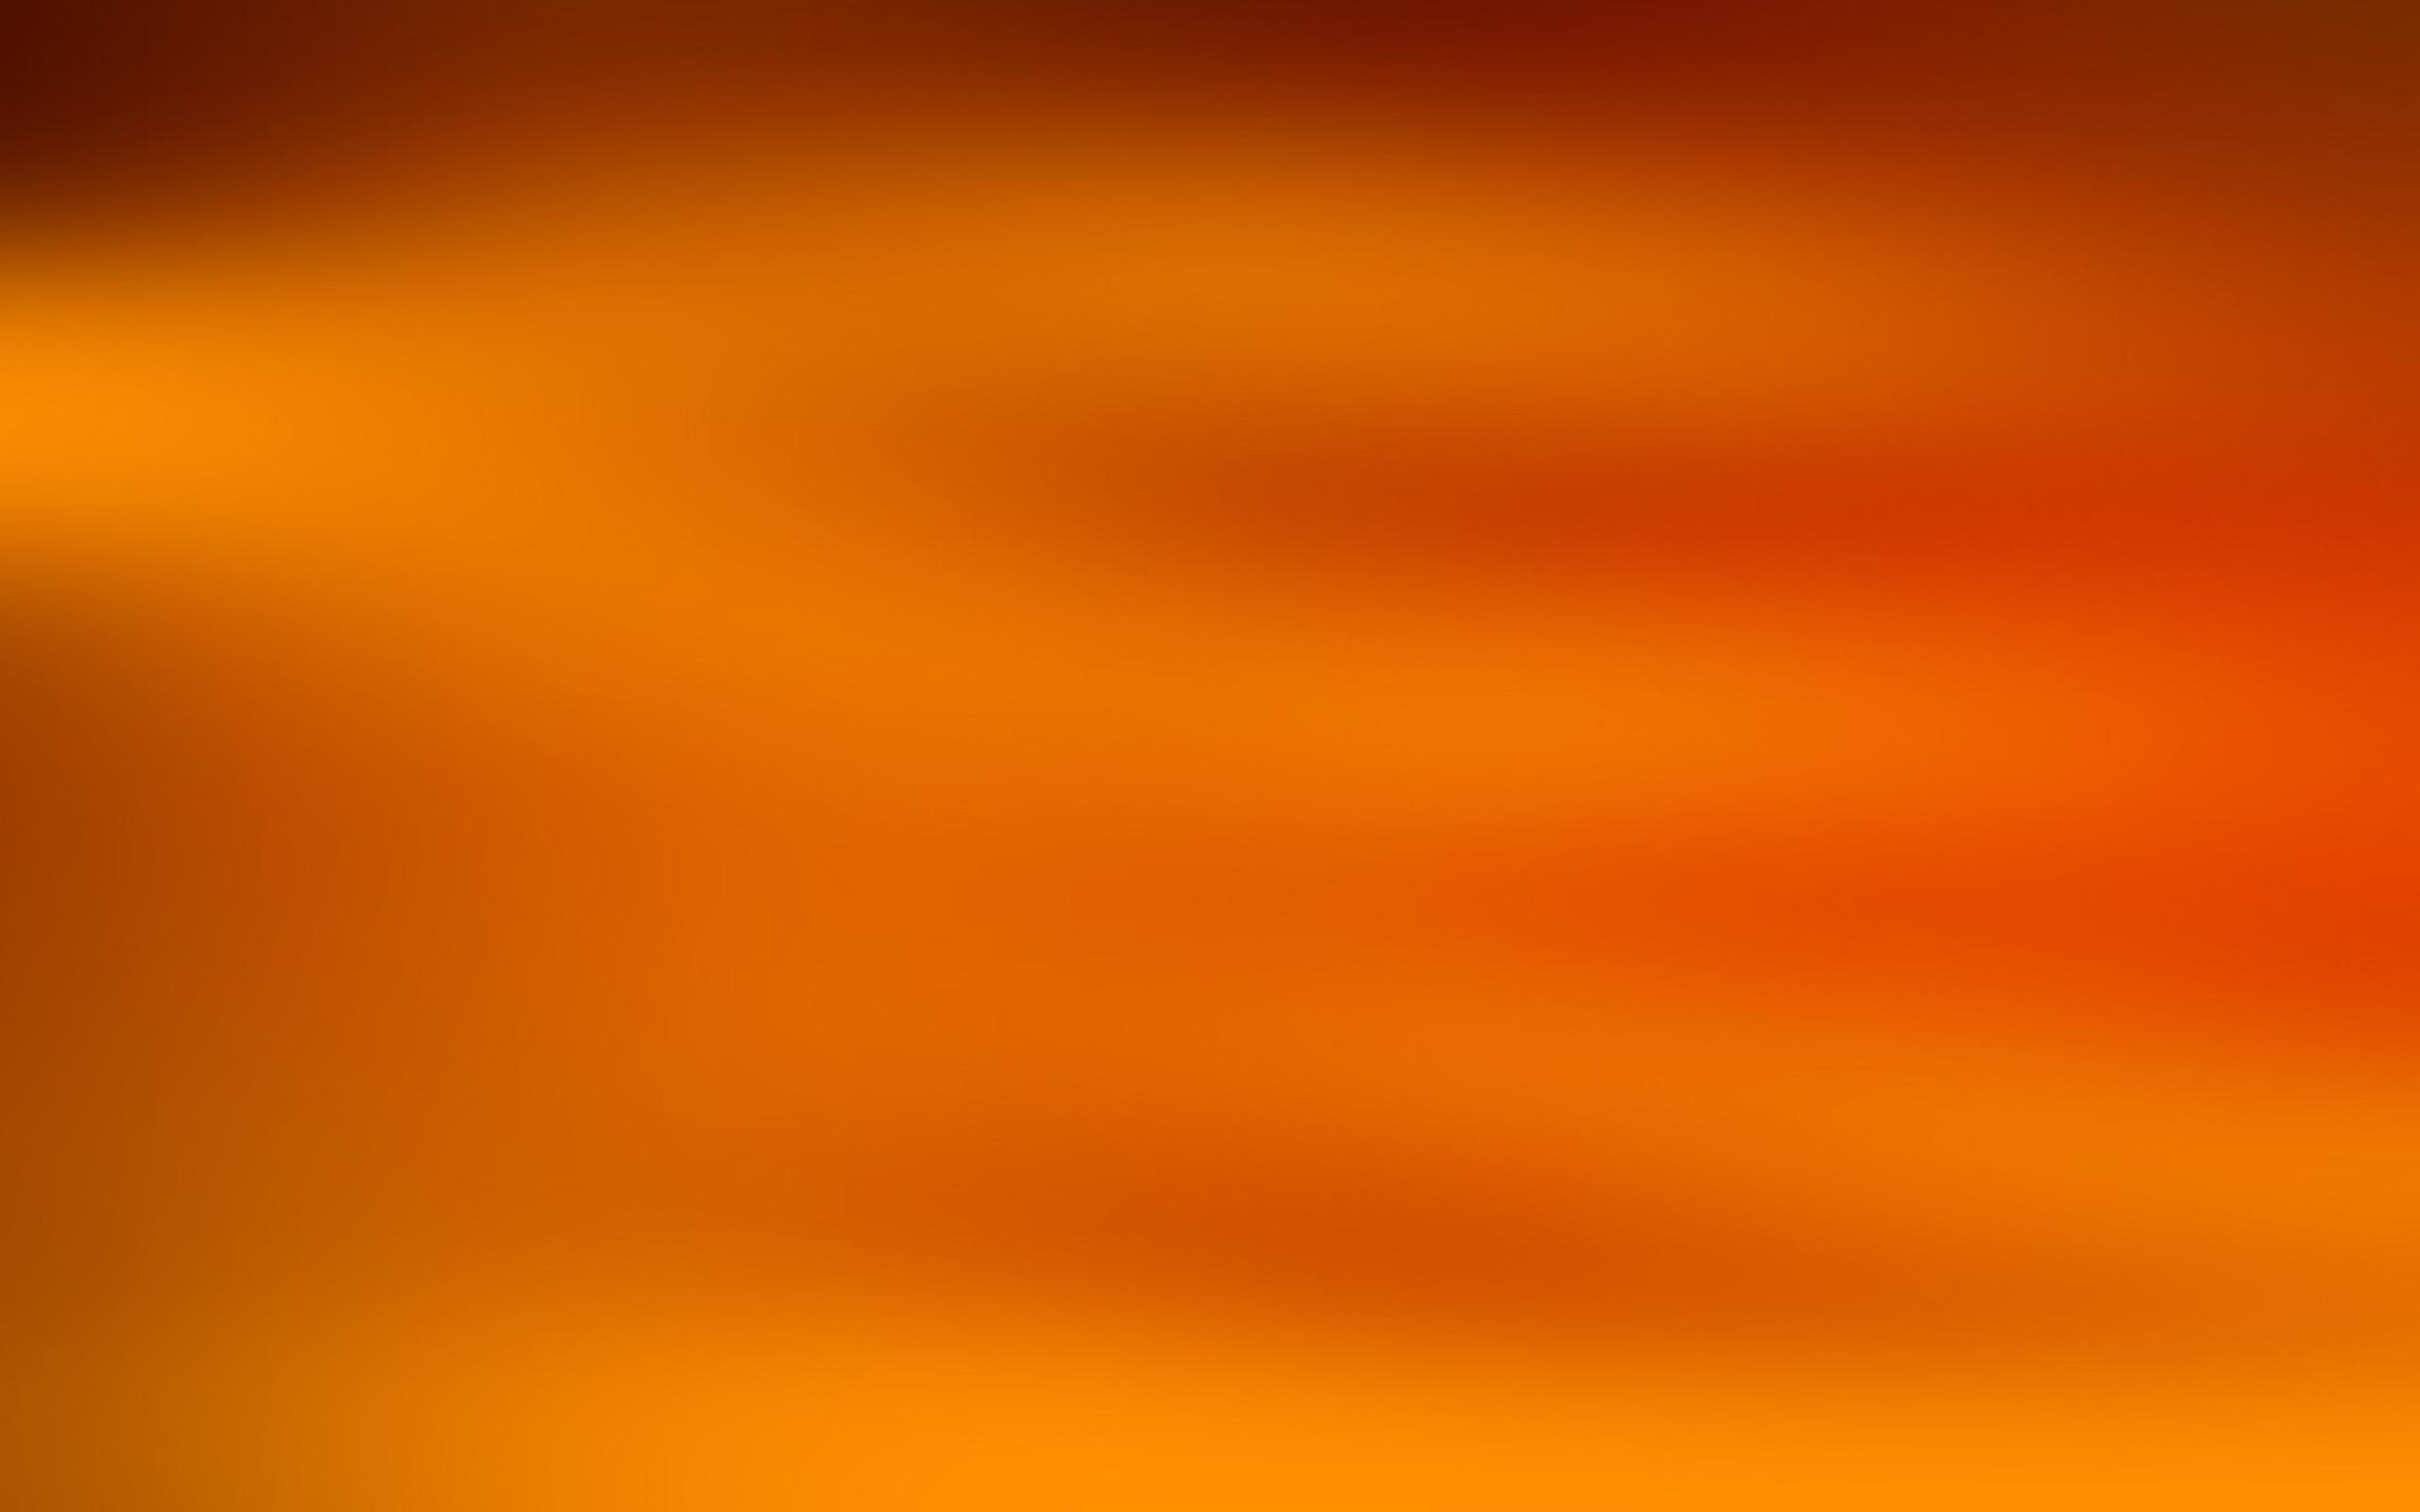 Solid Orange: Màu cam trẻ trung và năng động sẽ là một lựa chọn tuyệt vời cho những ai yêu thích sự tươi mới và sức sống. Bức ảnh này sẽ giúp bạn tìm hiểu về màu cam đặc biệt, với sắc thái đậm nét và tạo nên sự nổi bật cho không gian nhà bạn.